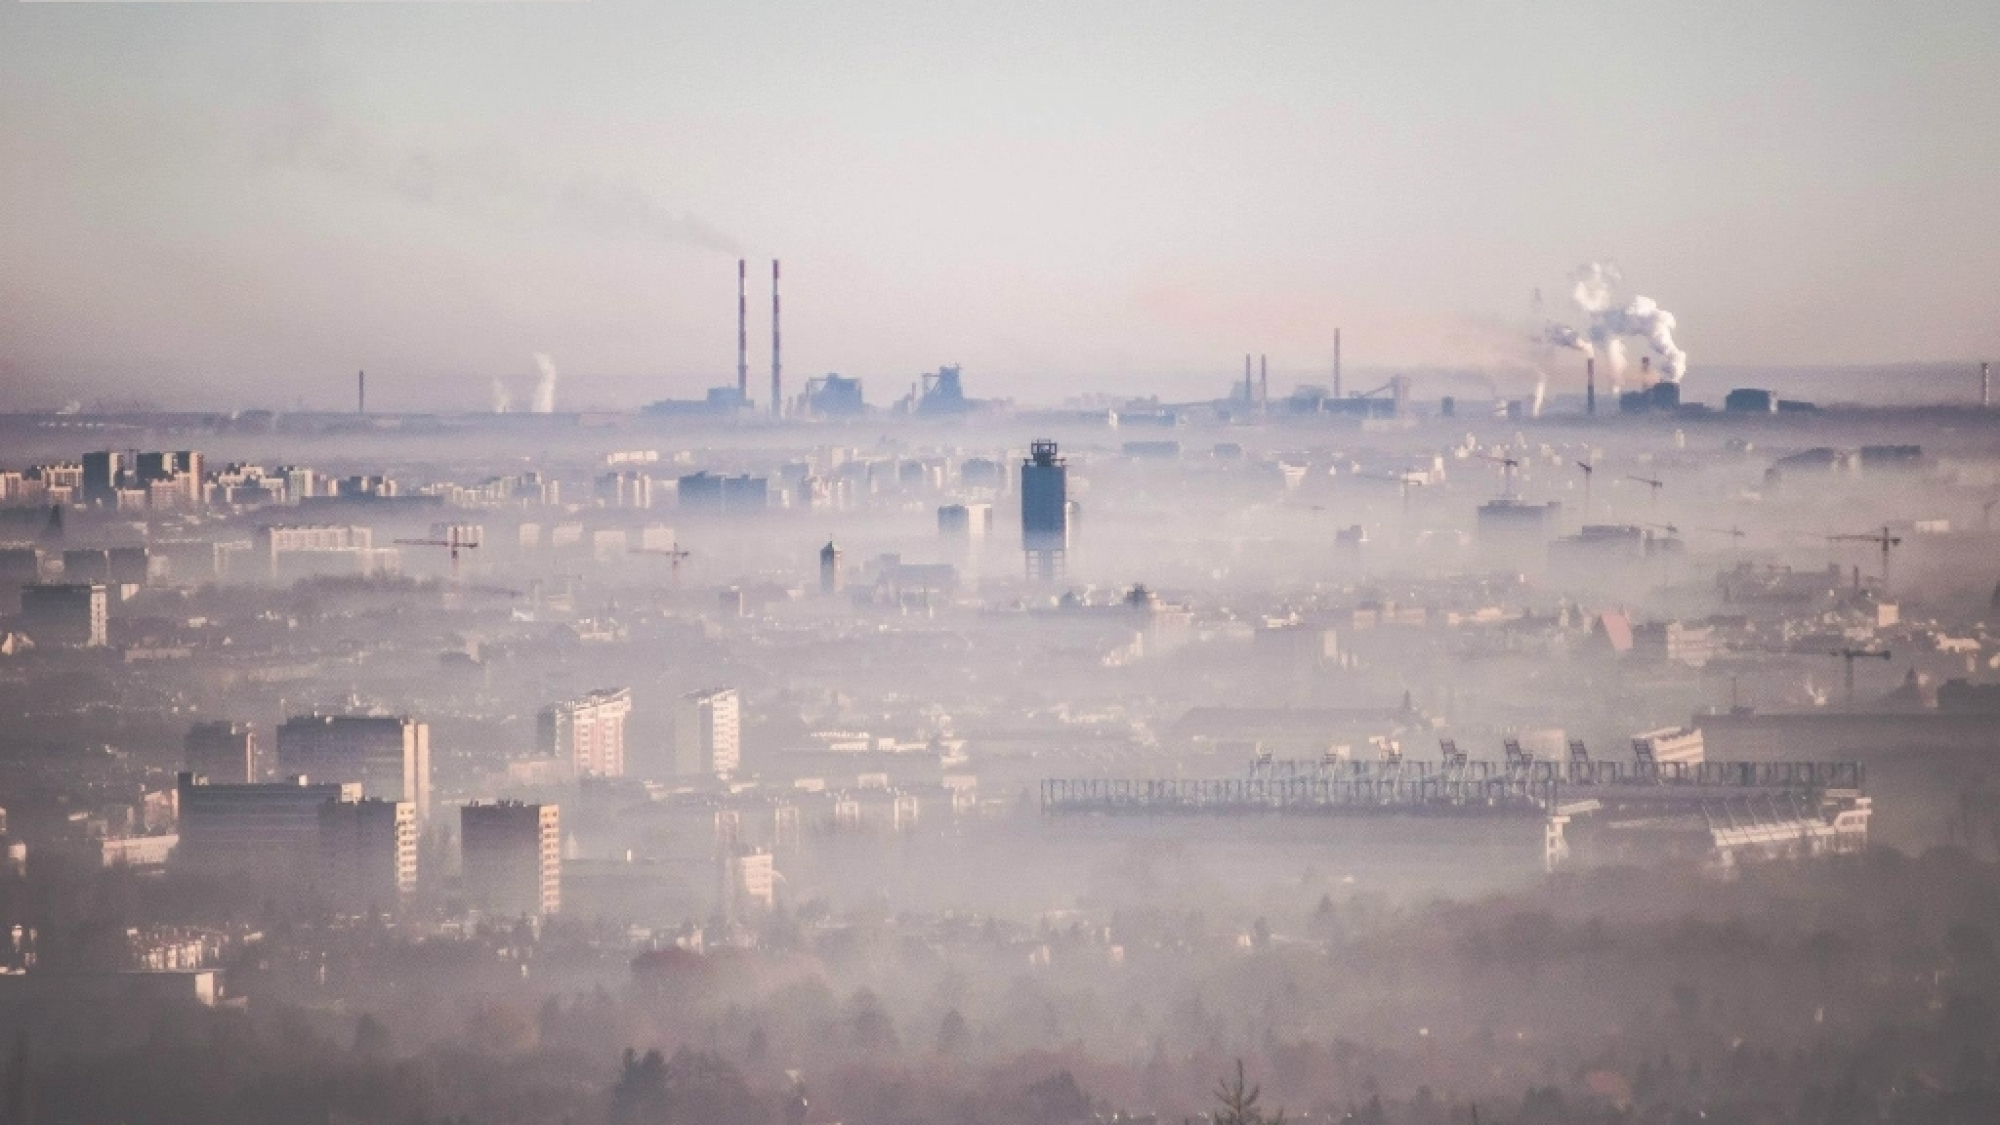 Kraków ma jedno z najwyższych poziomów zanieczyszczeń w Europie, głównie właśnie przez niskie emisje. Zdjęcie dzięki uprzejmości www.brudnykrakow.wordpress.com, autor: ERIK